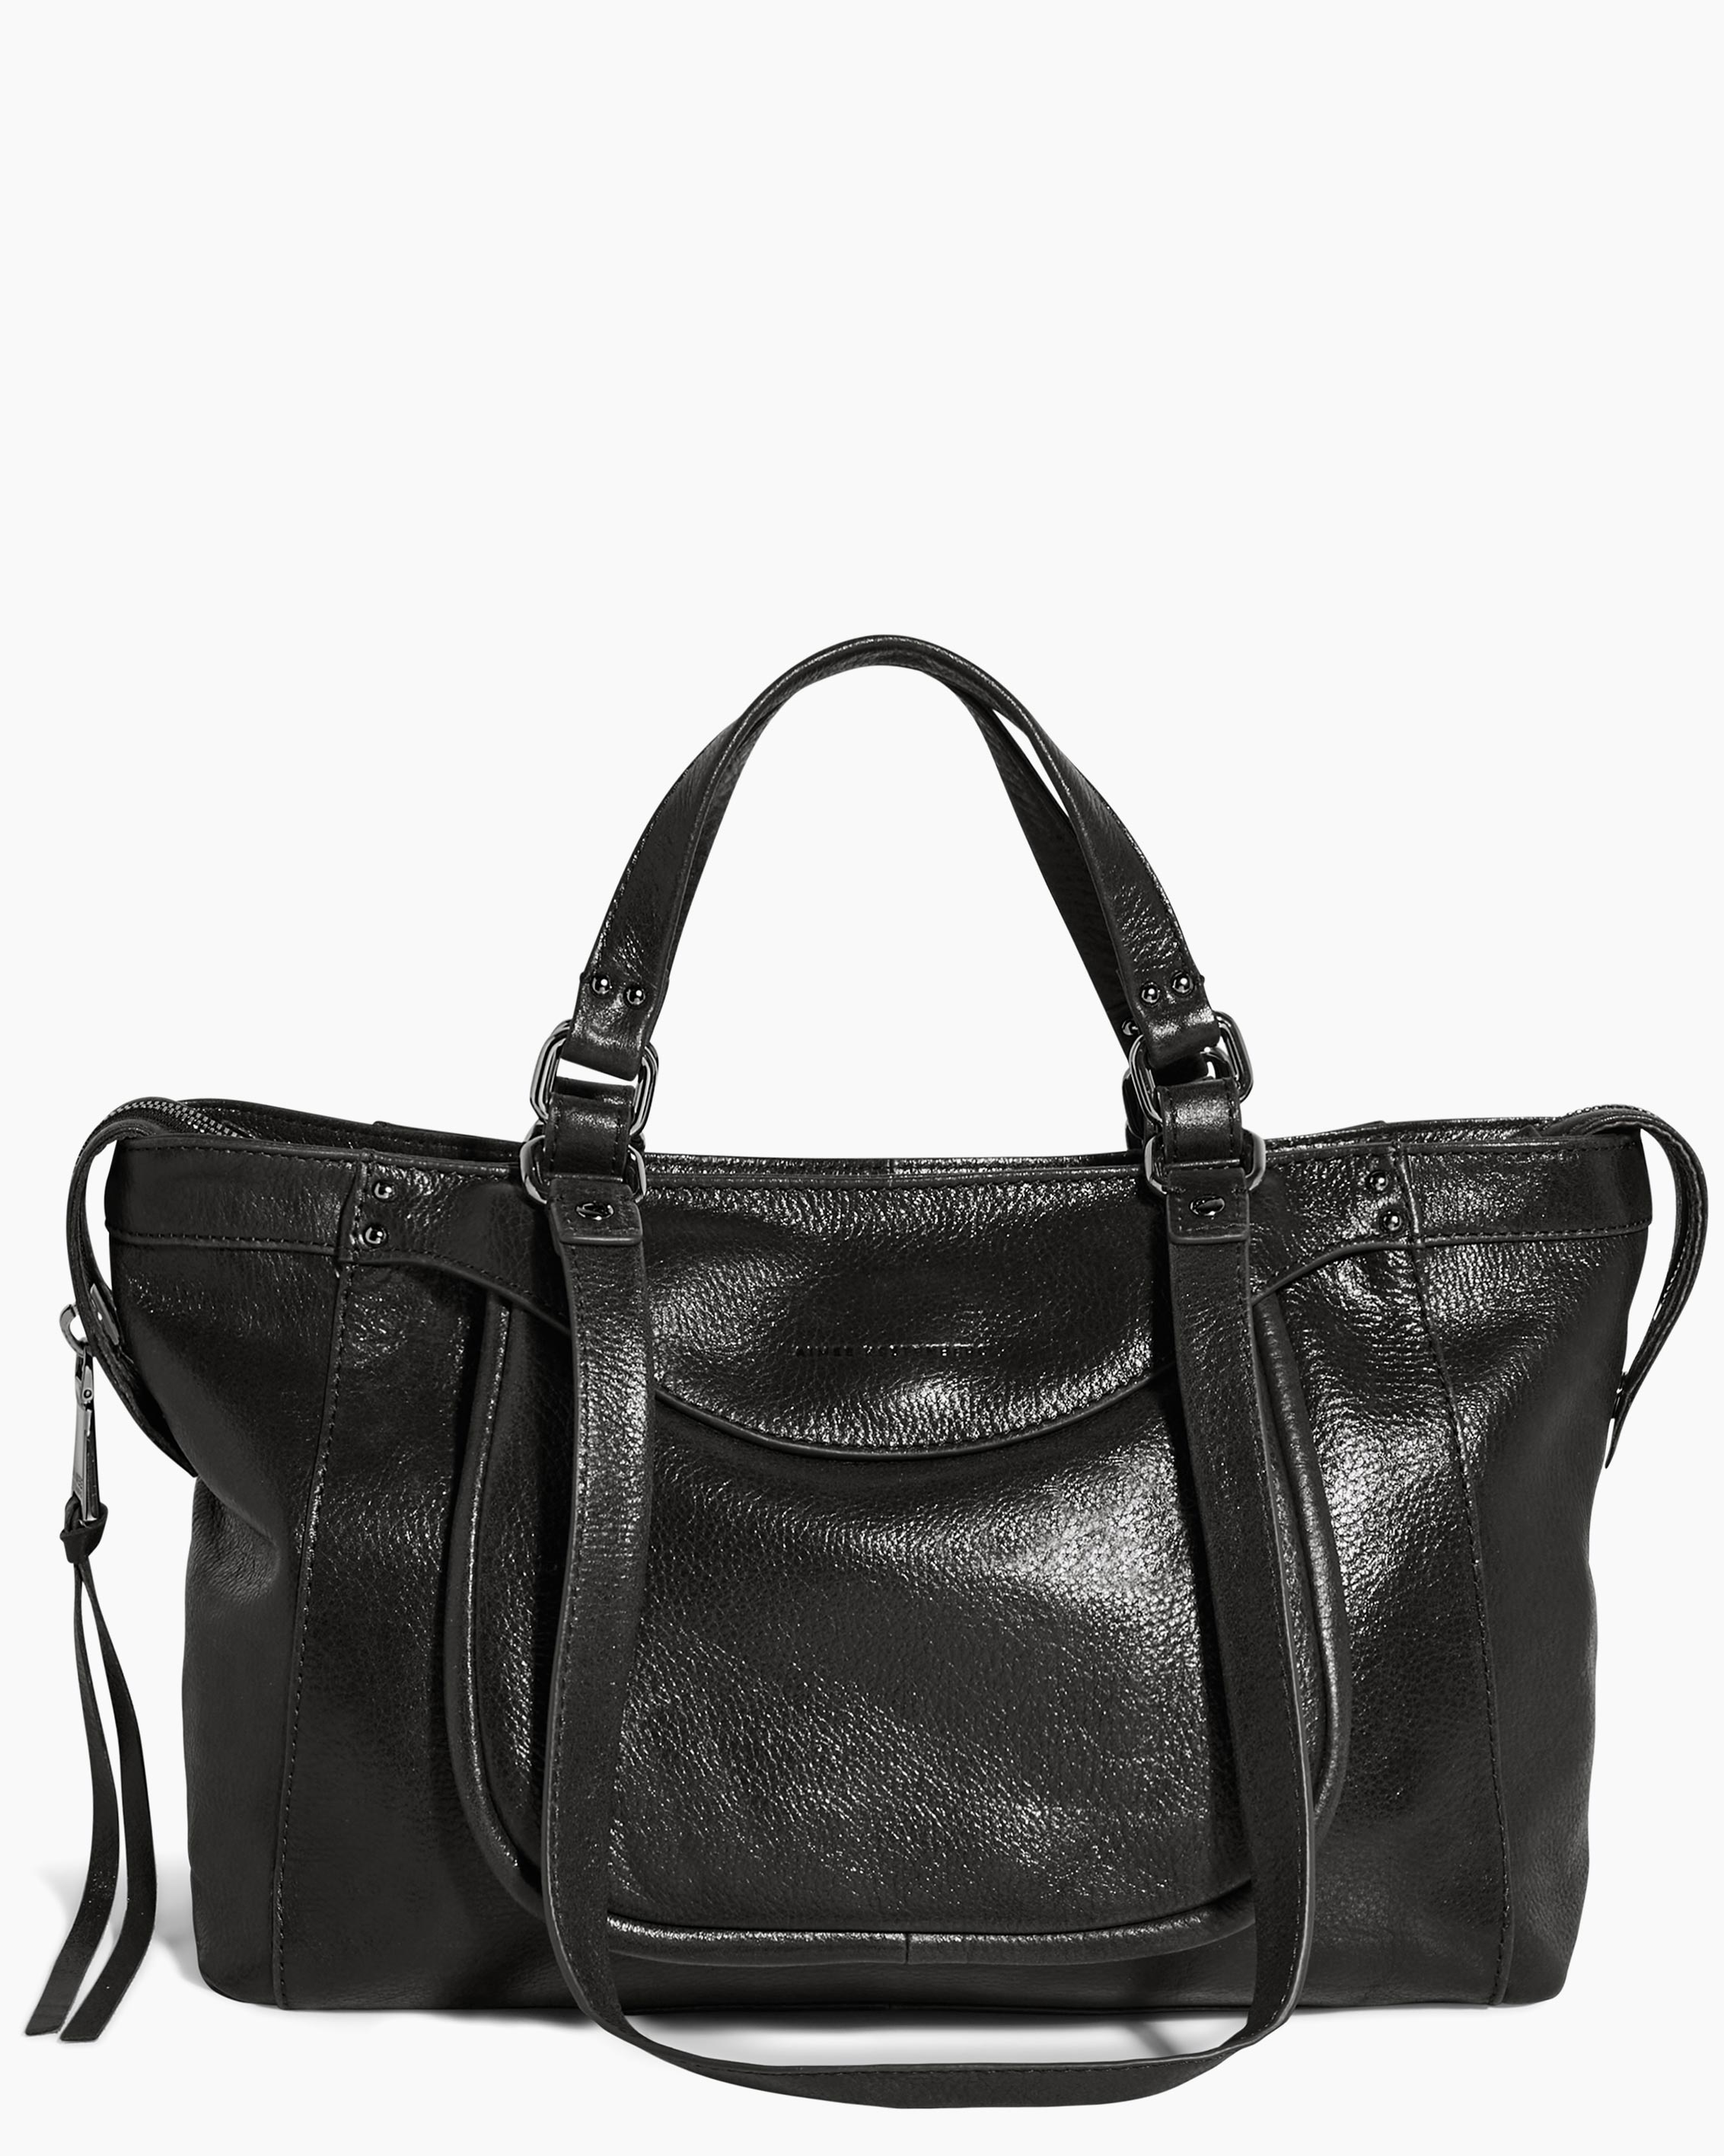 Vintage Women's Bag - Black